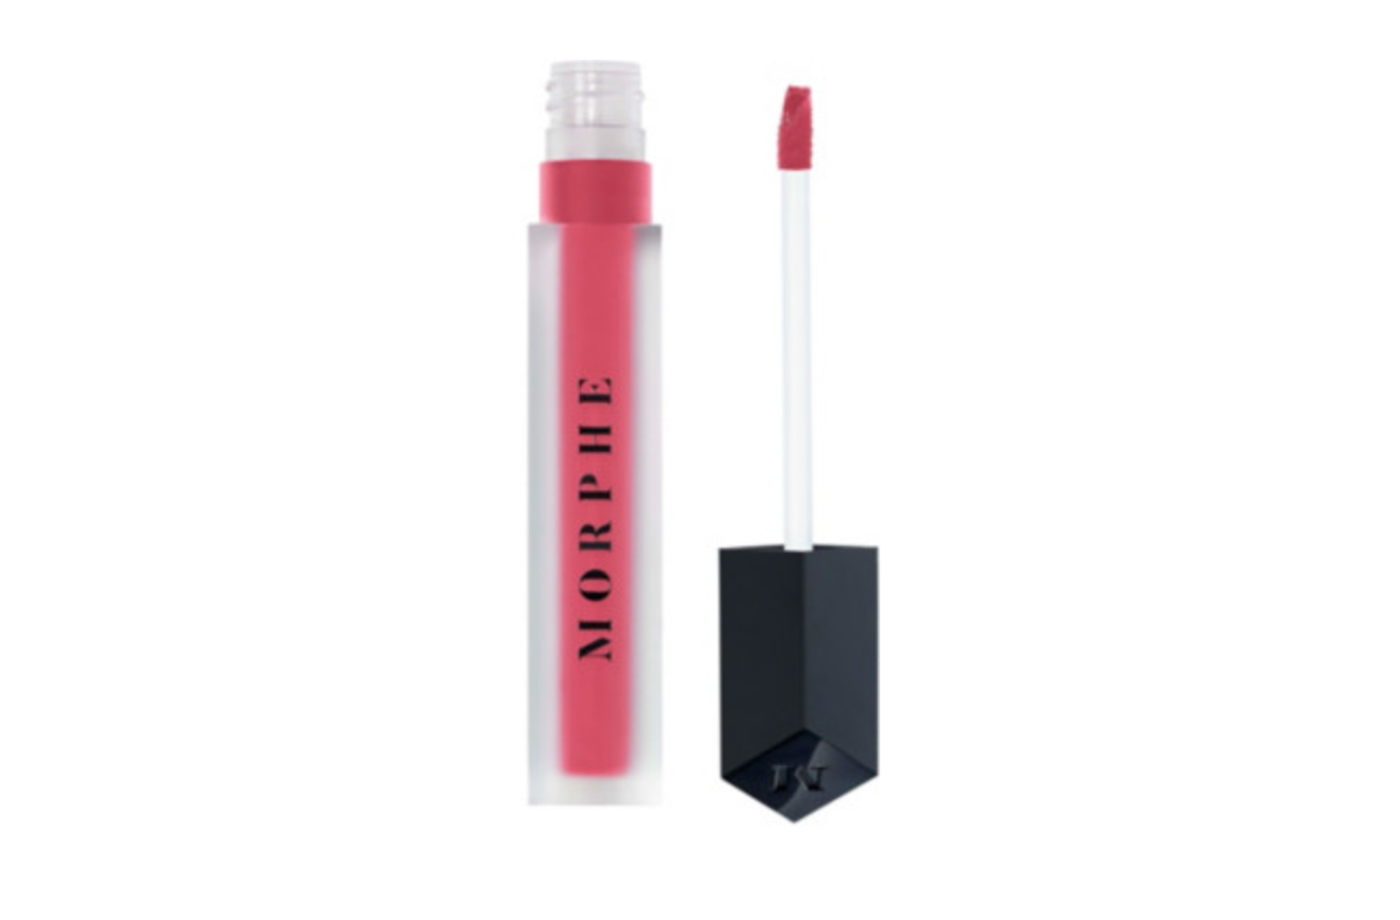 Morphe Liquid Lipstick, best lipstick for face masks